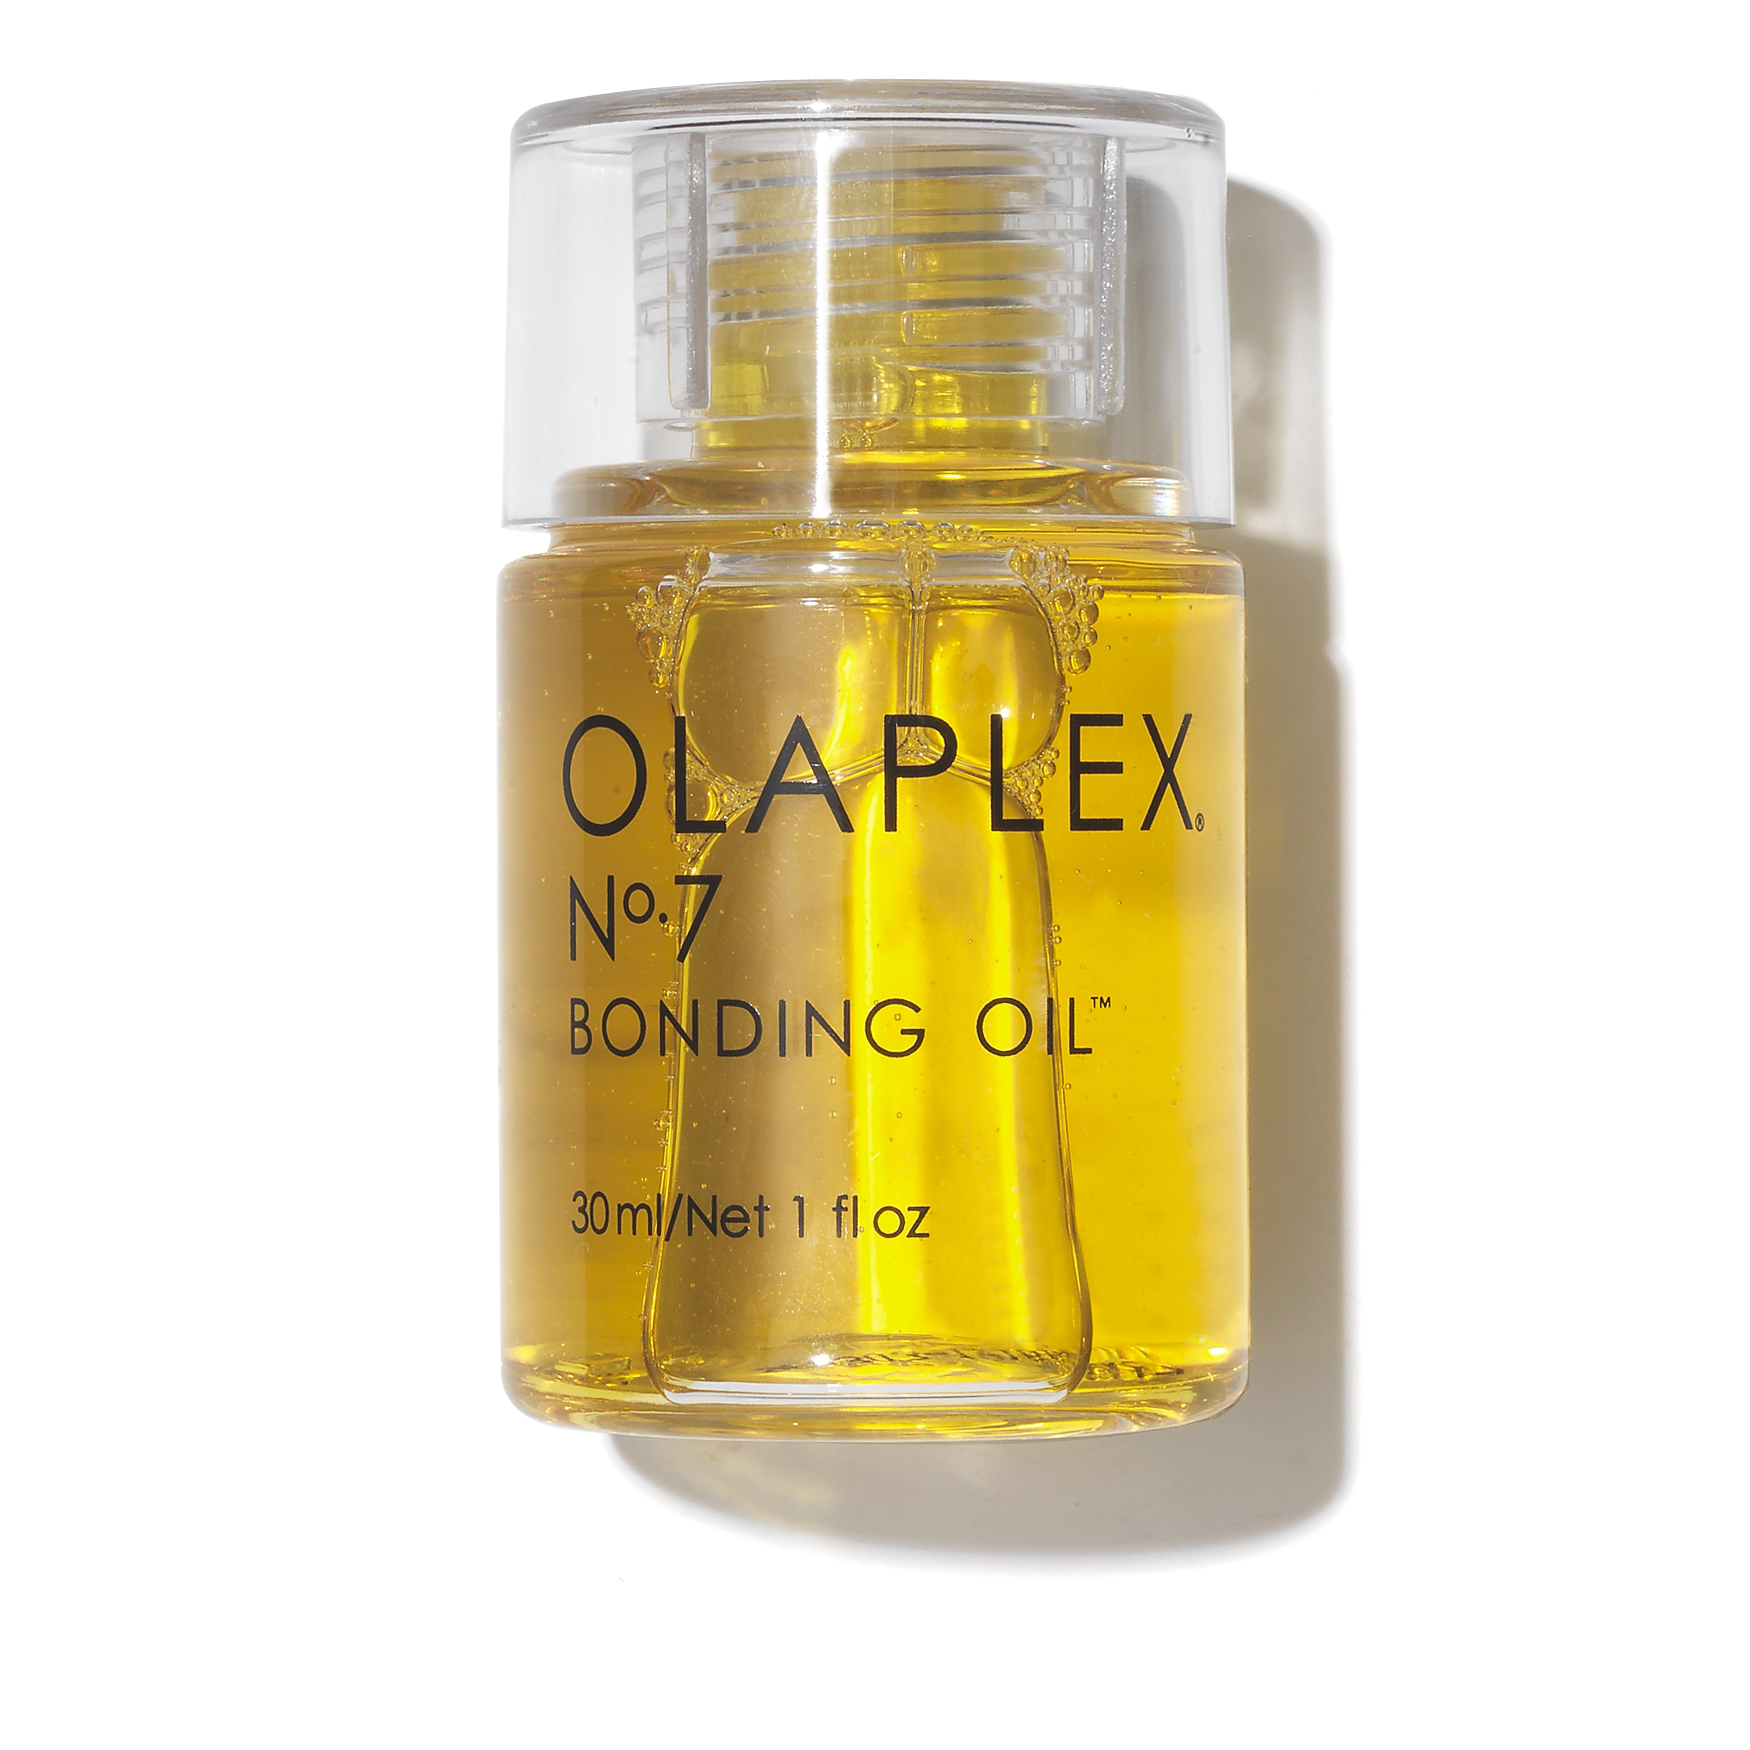 Olaplex No.7 Bonding Oil | Space NK